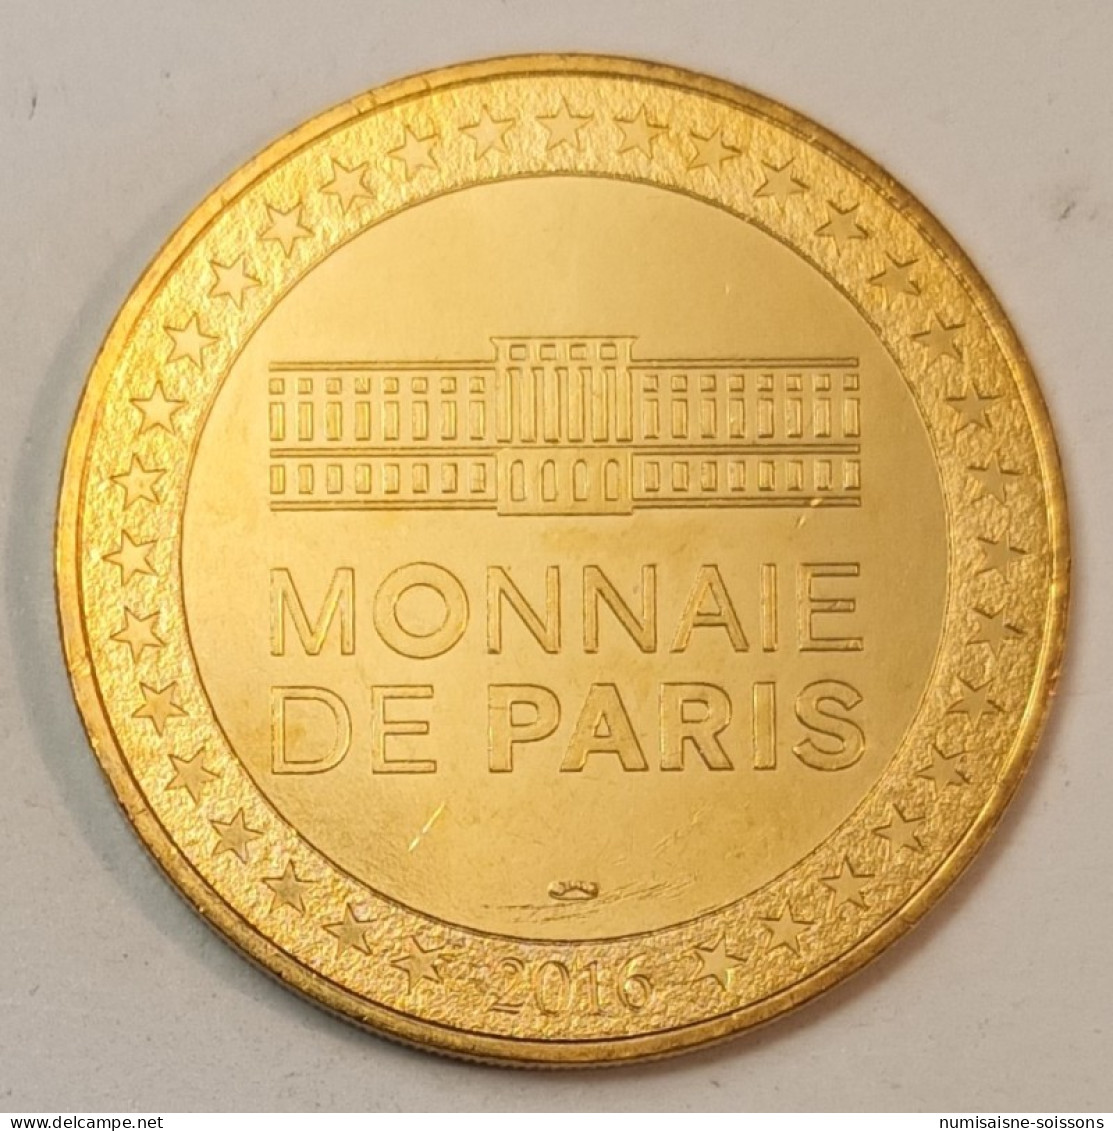 75 - HOTEL DE LA MONNAIE - NONA ORA - MAURIZIO CATTELAN -  MONNAIE DE PARIS - 2016 - 2016